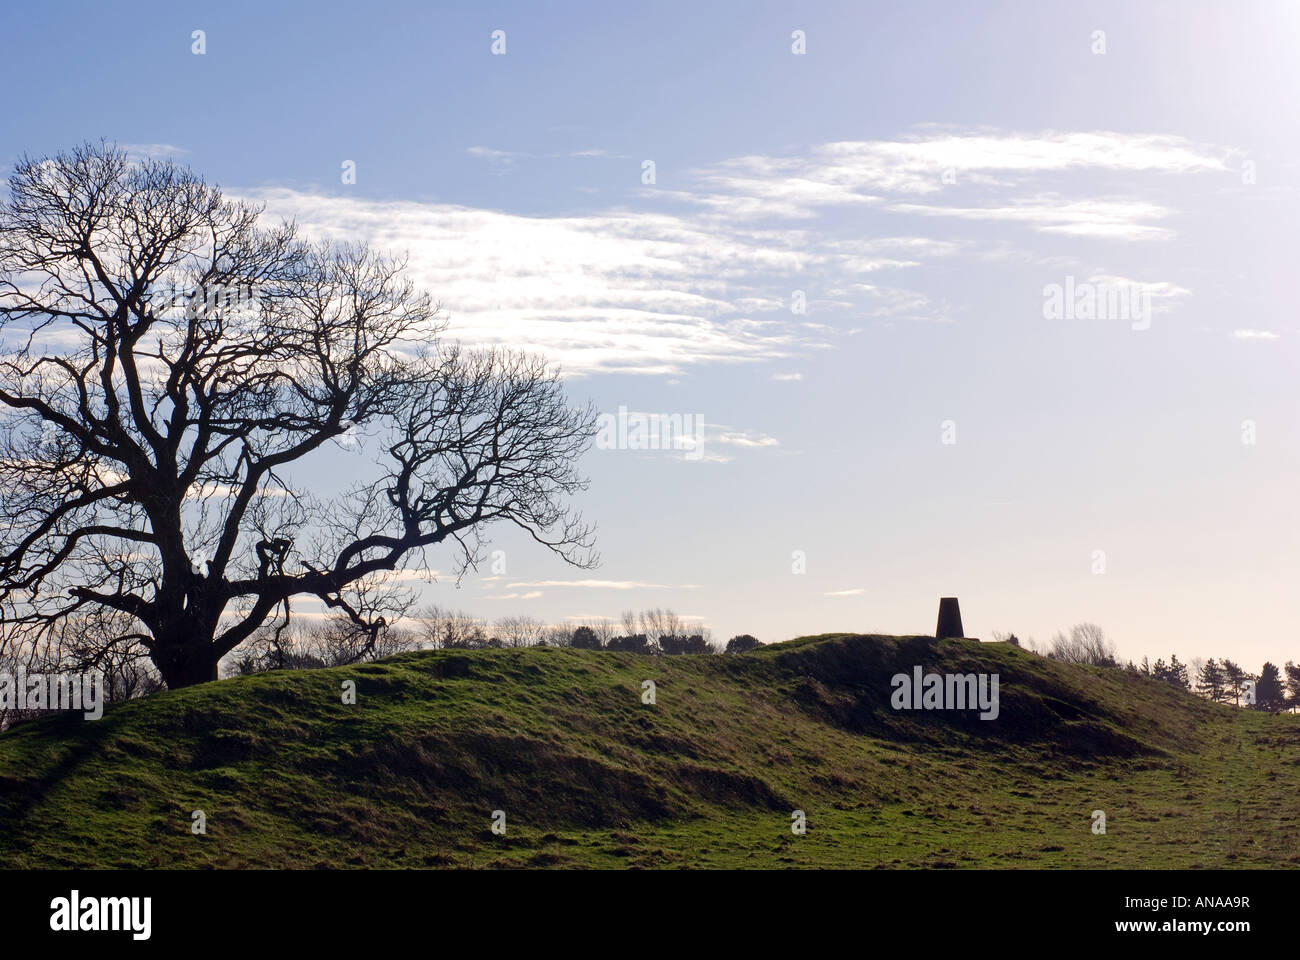 Burrough Hügel einschließlich trig Punkt, Leicestershire, England, UK Stockfoto